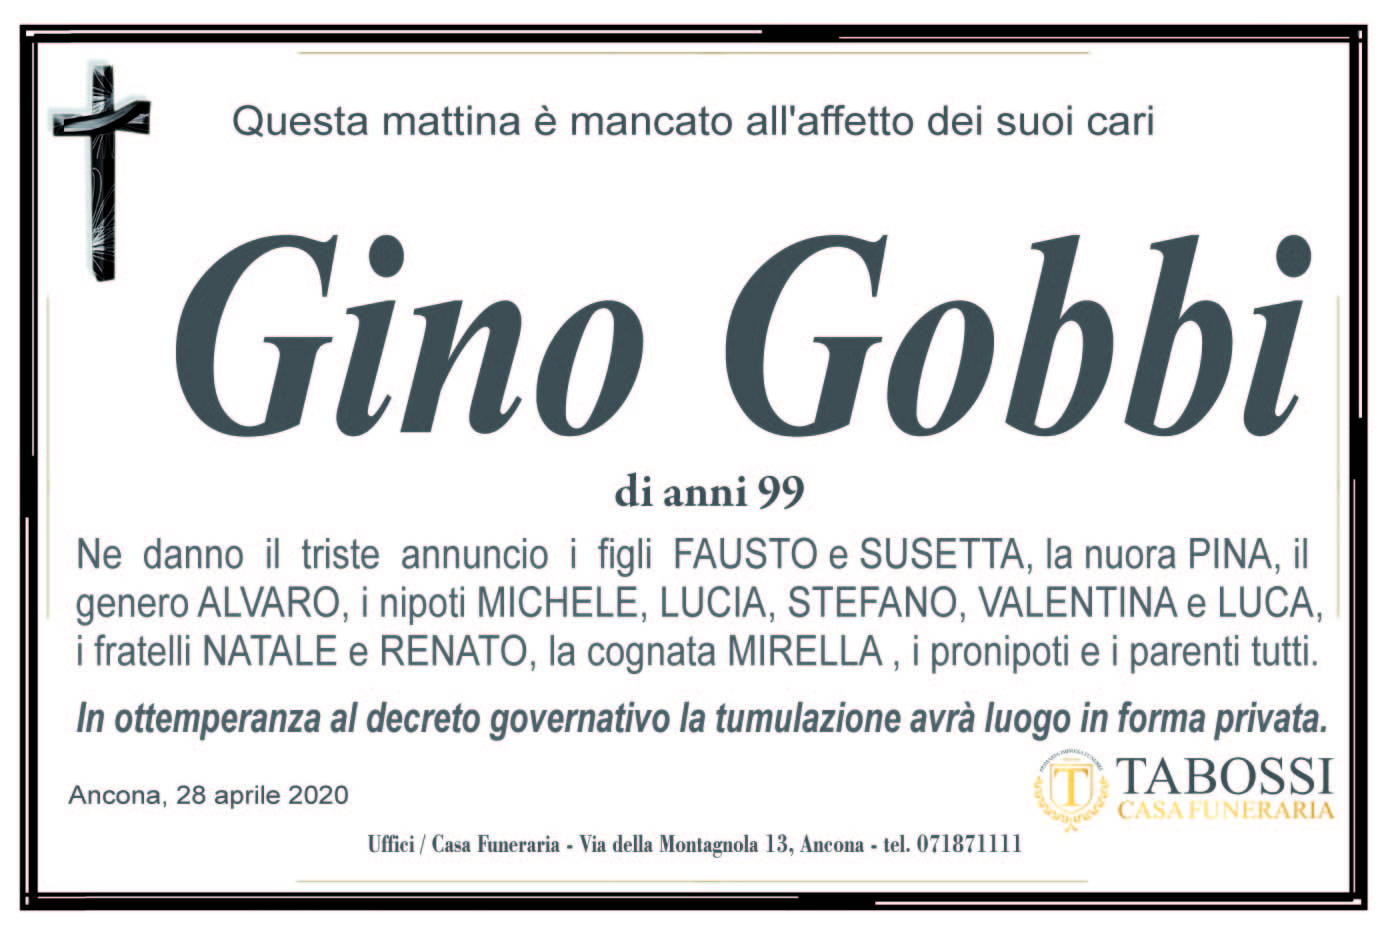 Gino Gobbi